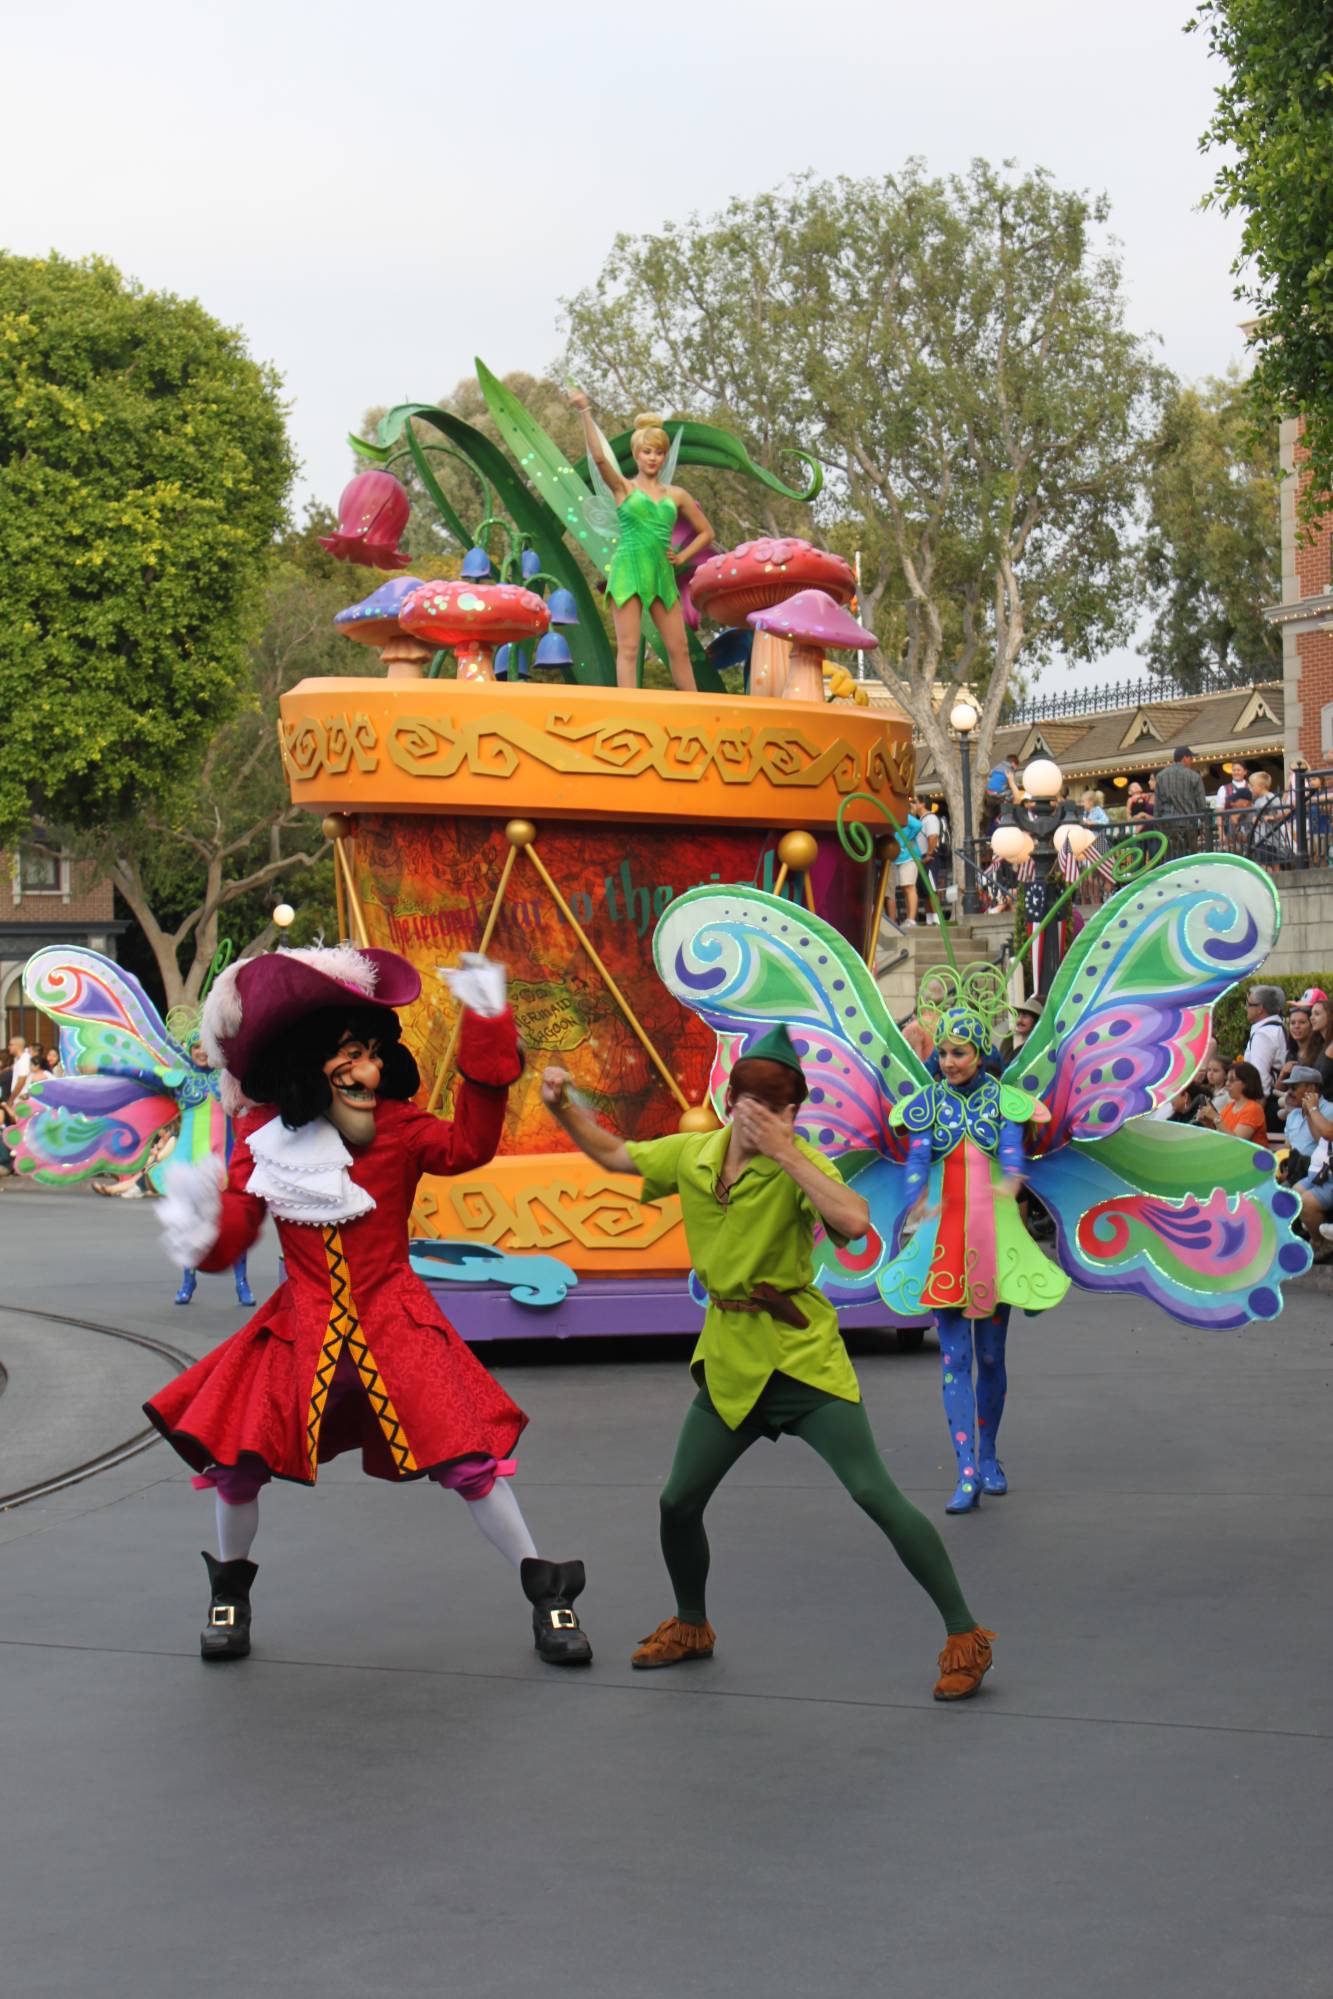 Disneyland - SoundSational Parade - Peter Pan